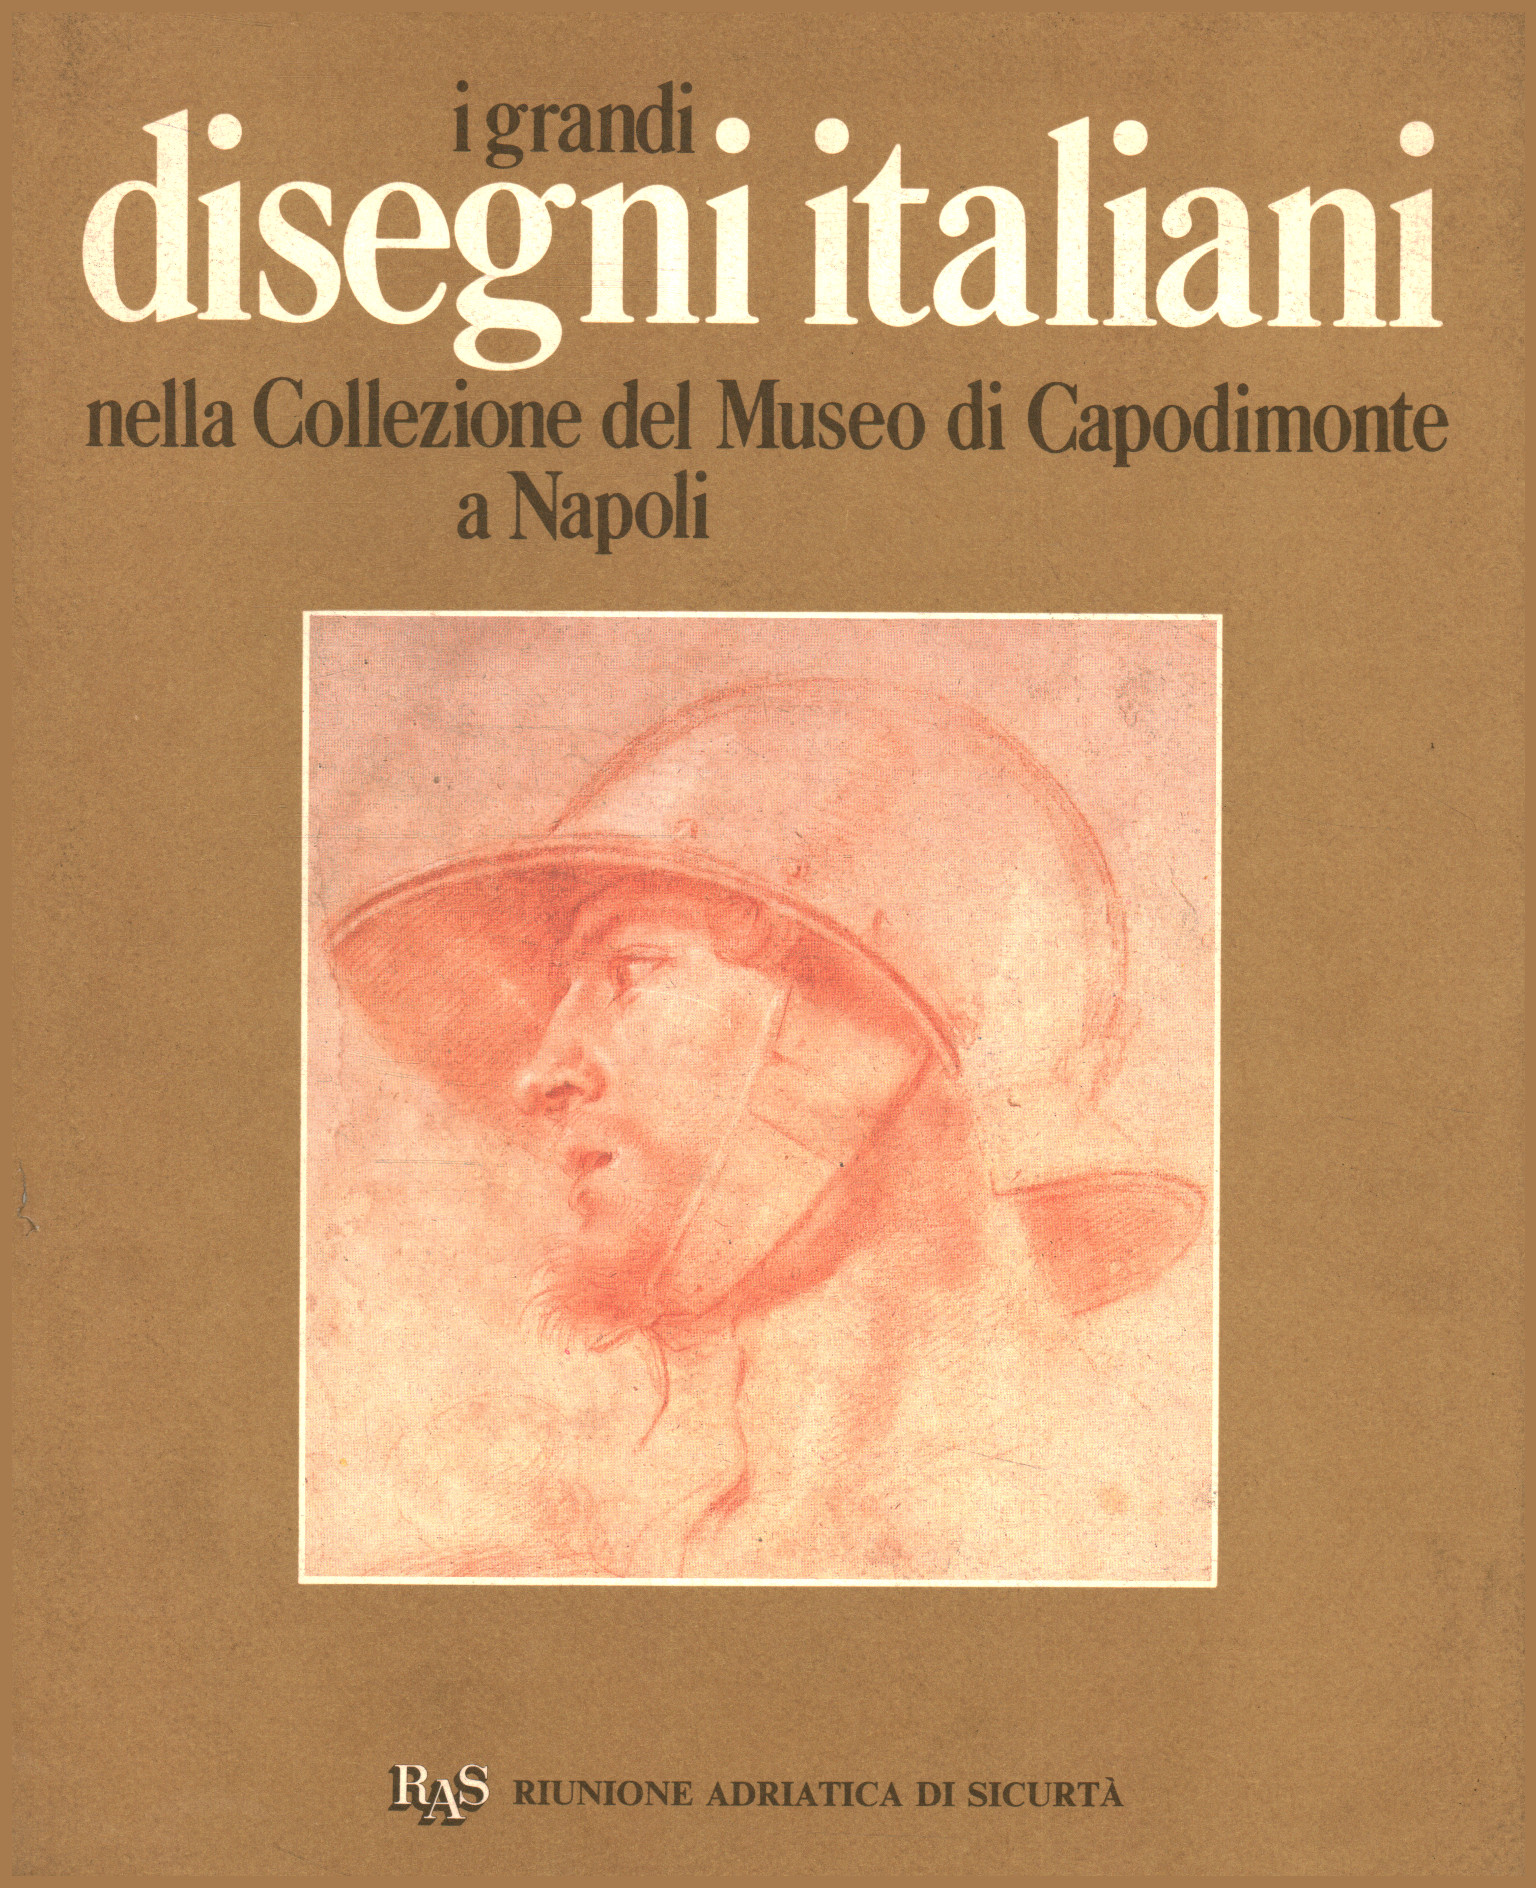 Los grandes dibujos italianos de la Colección